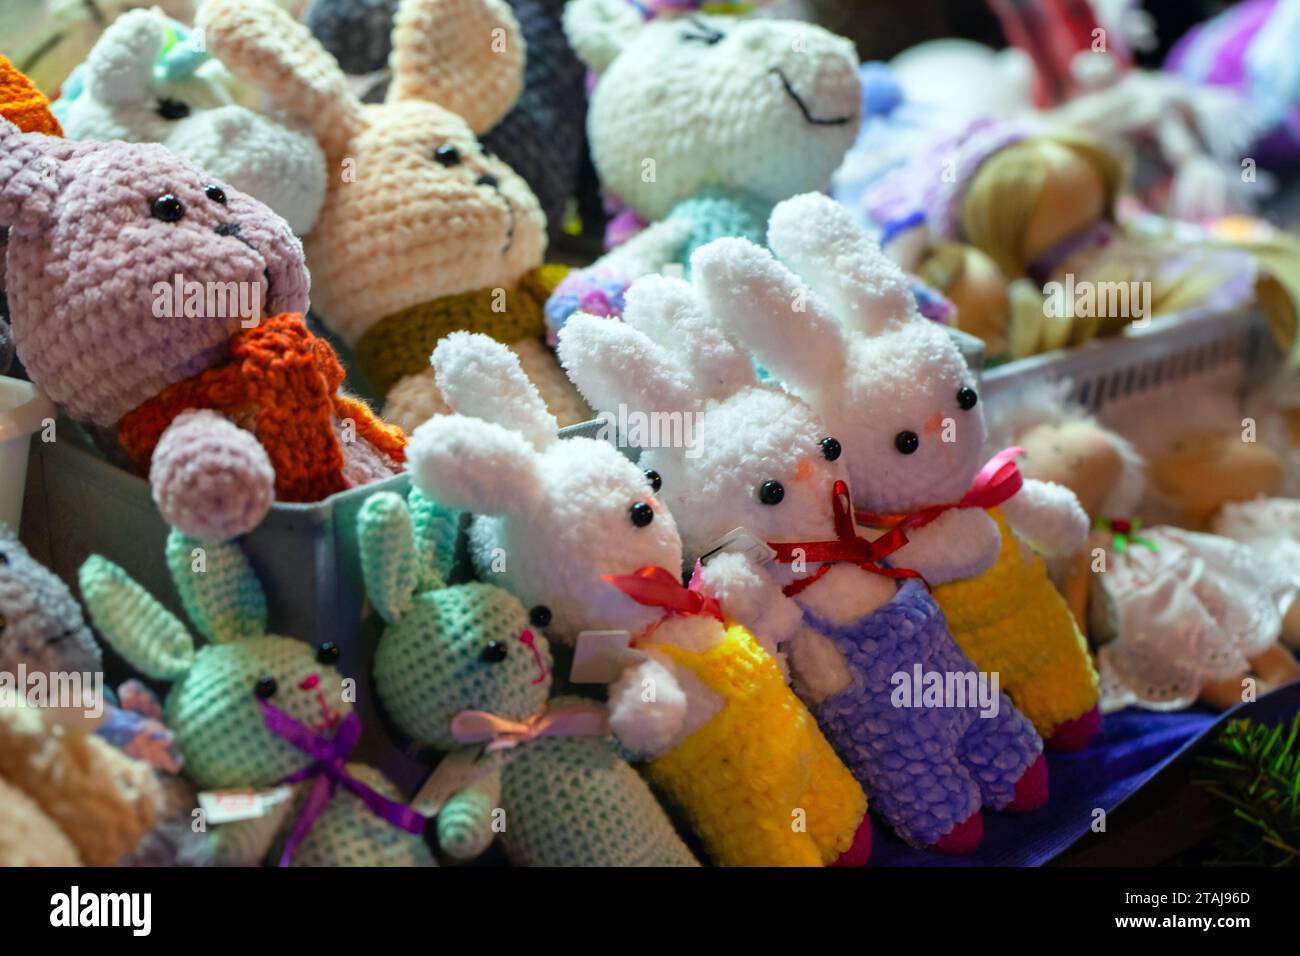 Conejos coloridos, juguetes hechos a mano de punto yacen en el mostrador en una tienda de regalos Foto de stock